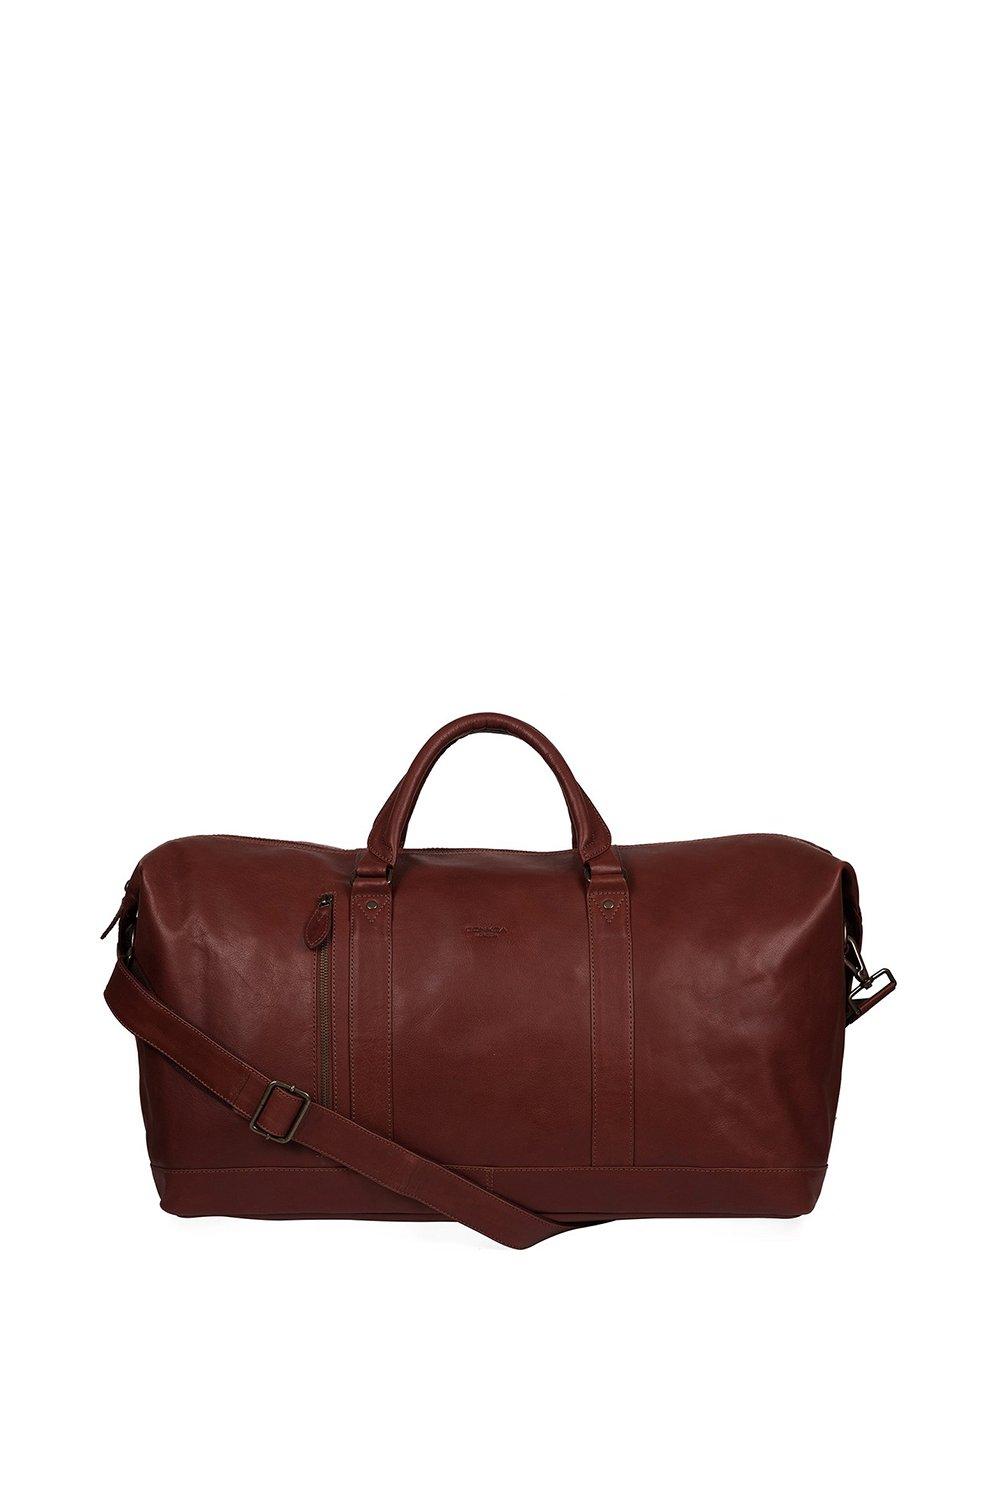 Кожаная сумка 'Gerson' Conkca London, коричневый